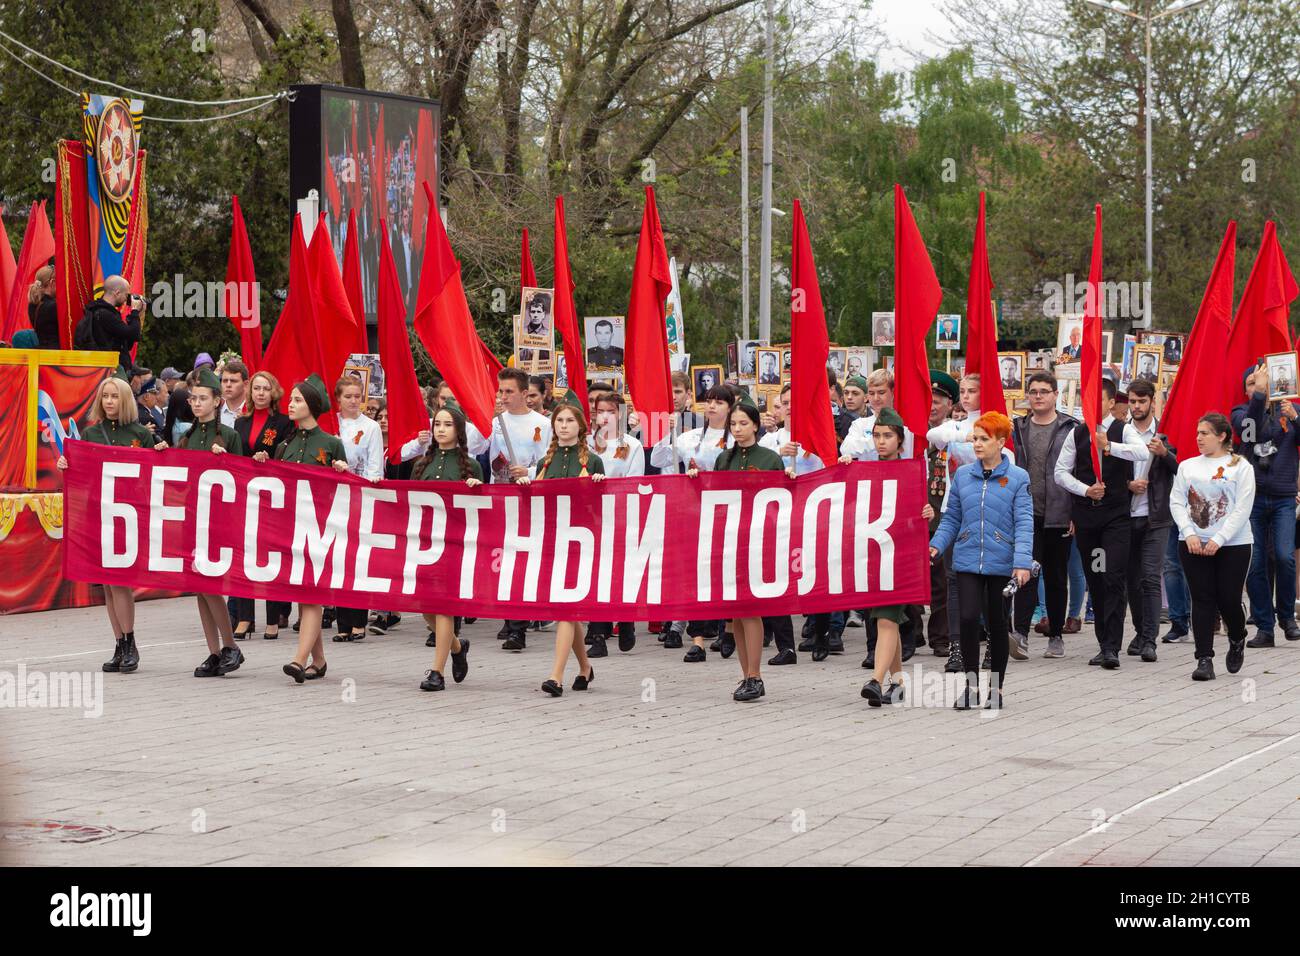 Anapa, Russland - 9. Mai 2019: Junge Leute tragen das unsterbliche Regiment und führen eine Kolumne bei der Siegestagsparade am 9. Mai in Anapa Stockfoto